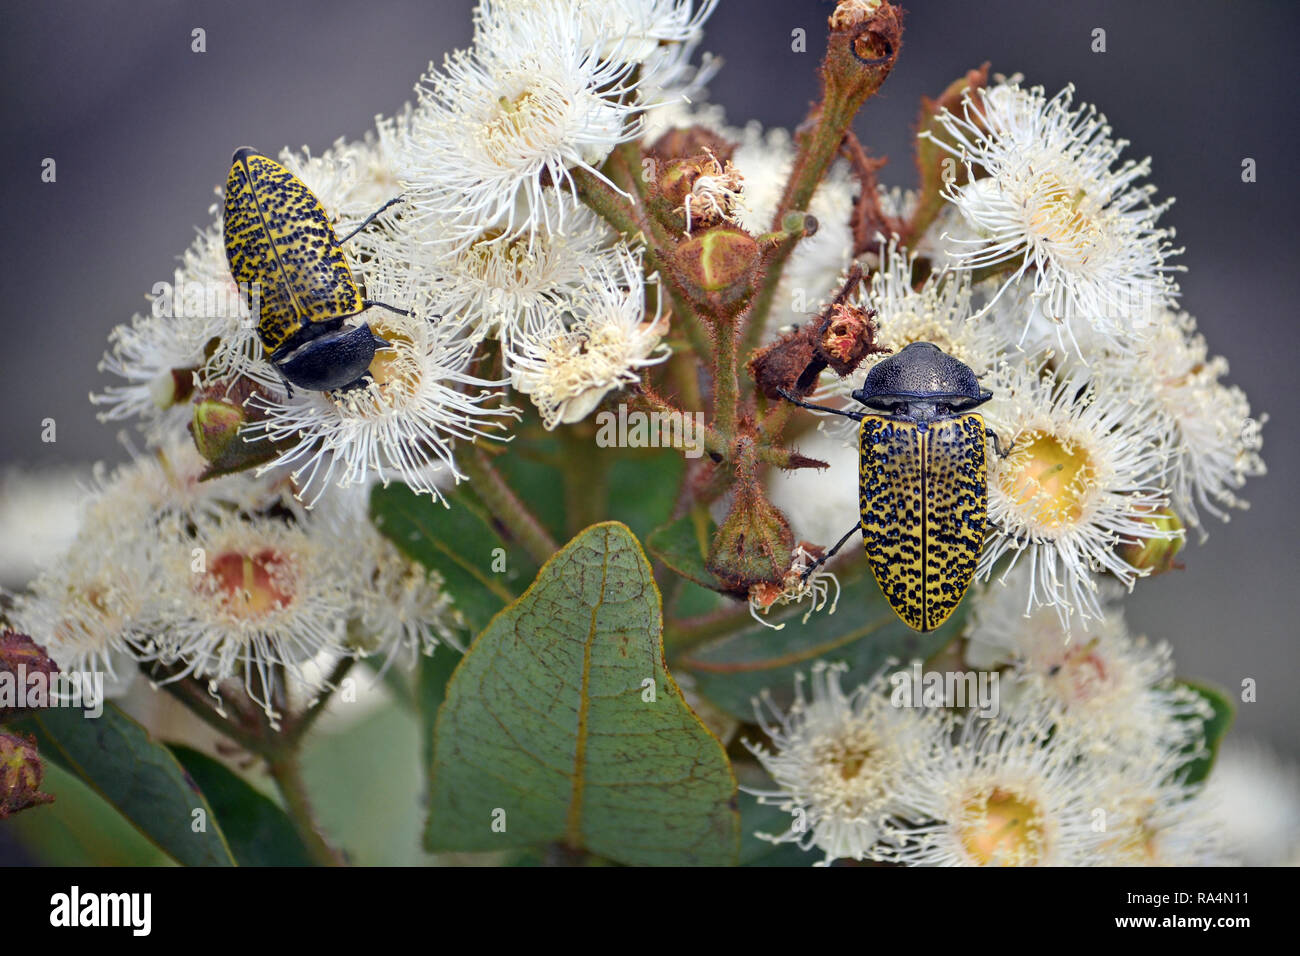 Rousseur australiennes indigènes Jewel Beetle, Stigmodera macularia, se nourrissant de nectar de fleurs, Angophora hispida Royal National Park, NSW, Australie Banque D'Images